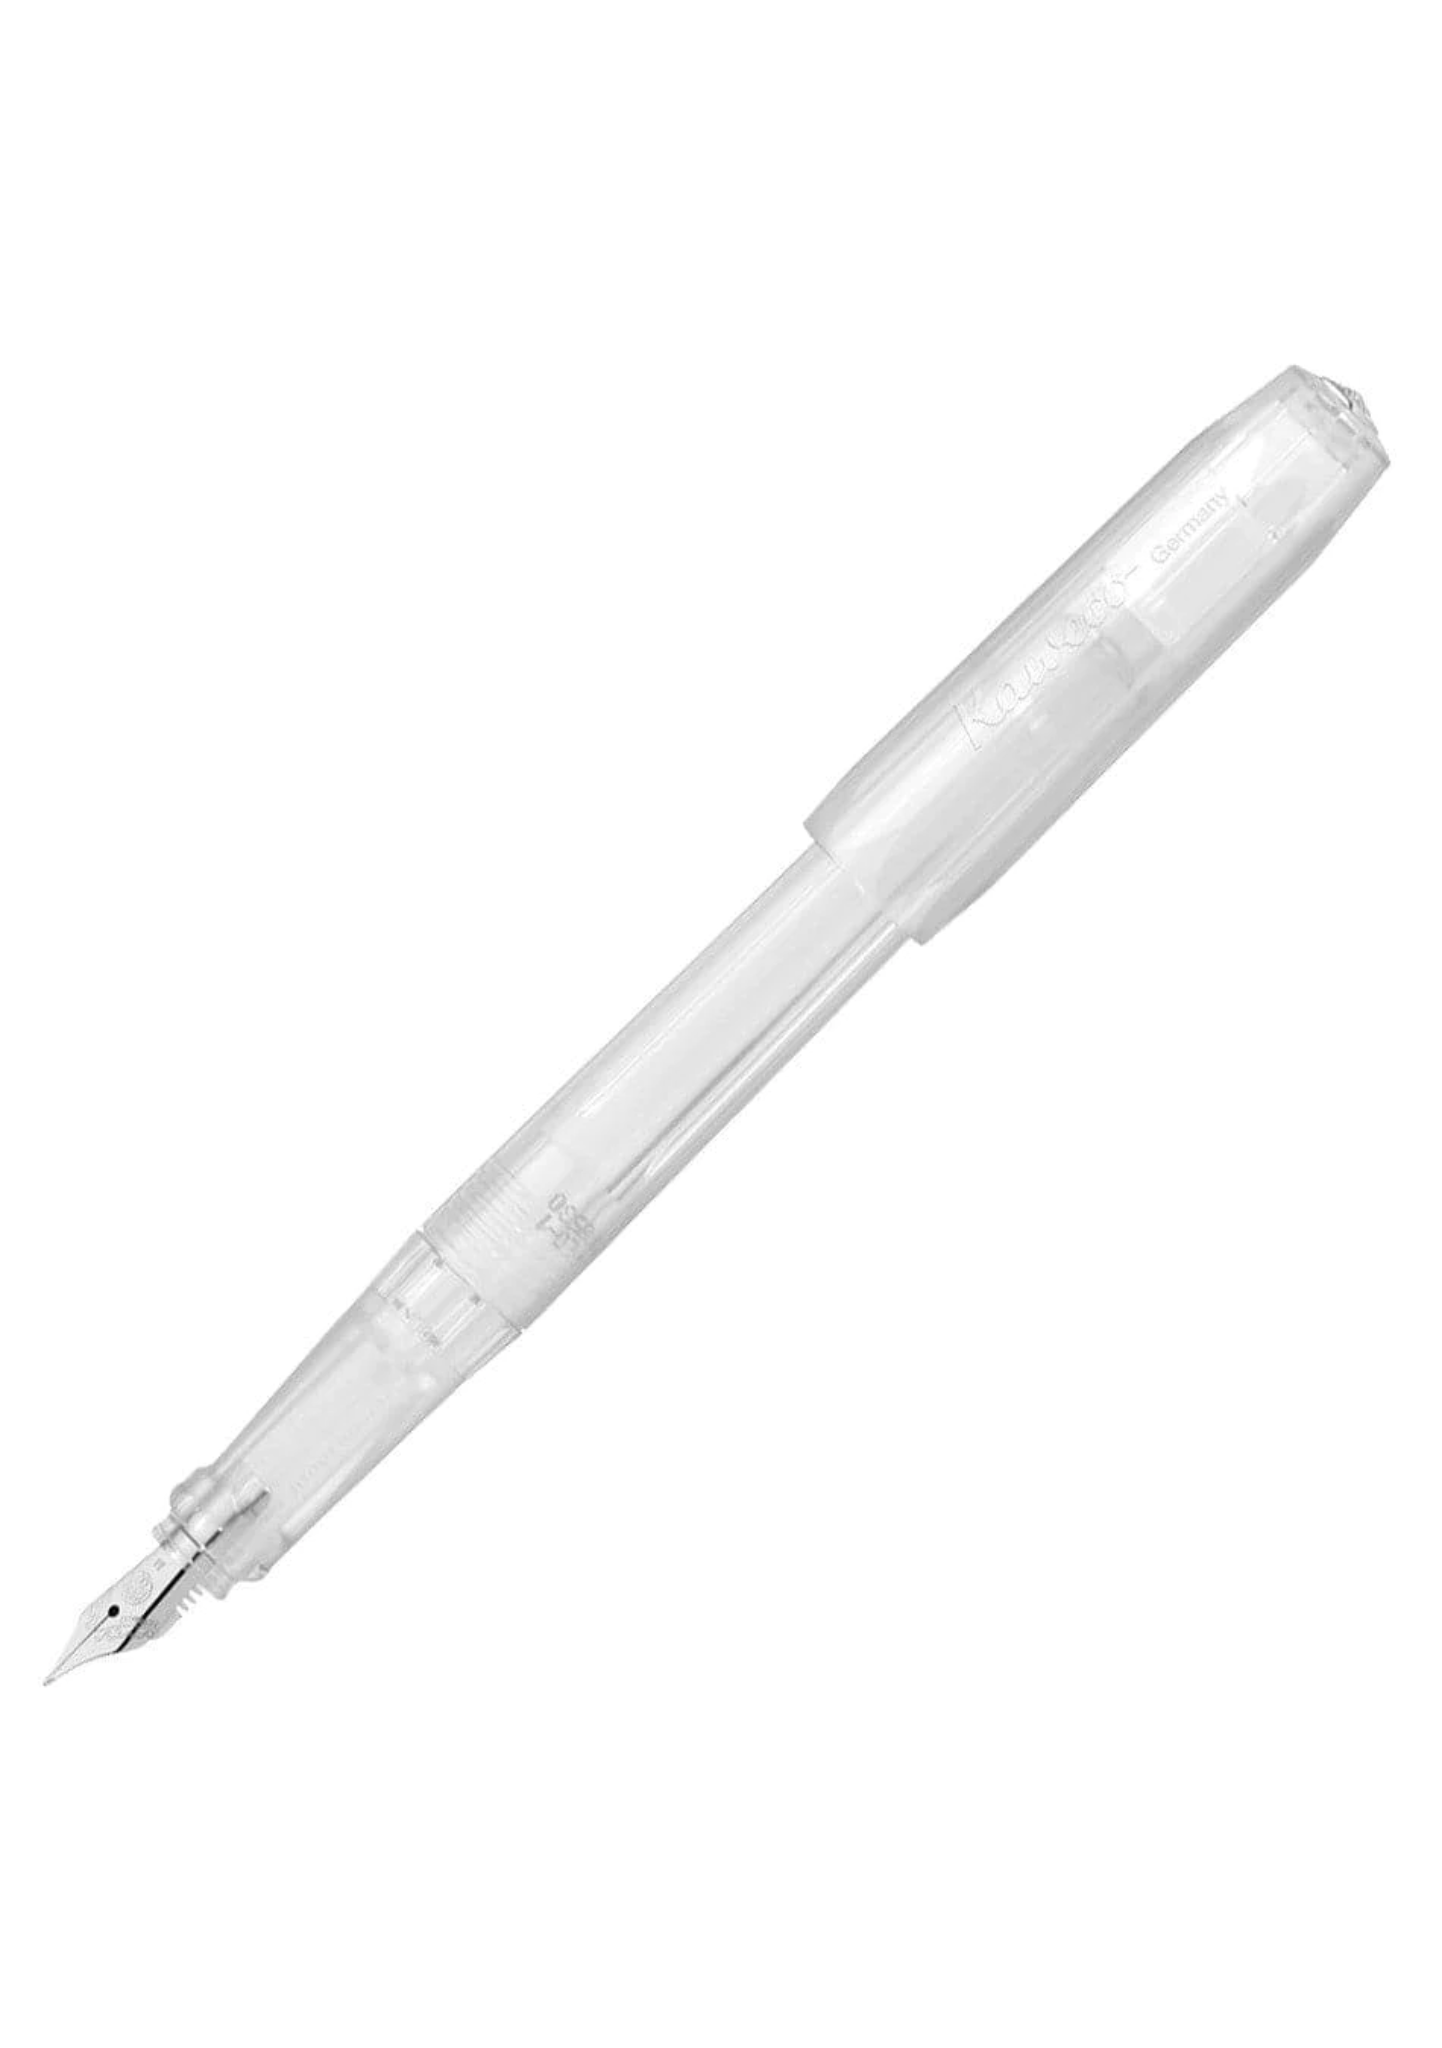 Kaweco Perkeo Fountain Pen - All Clear - Medium nib